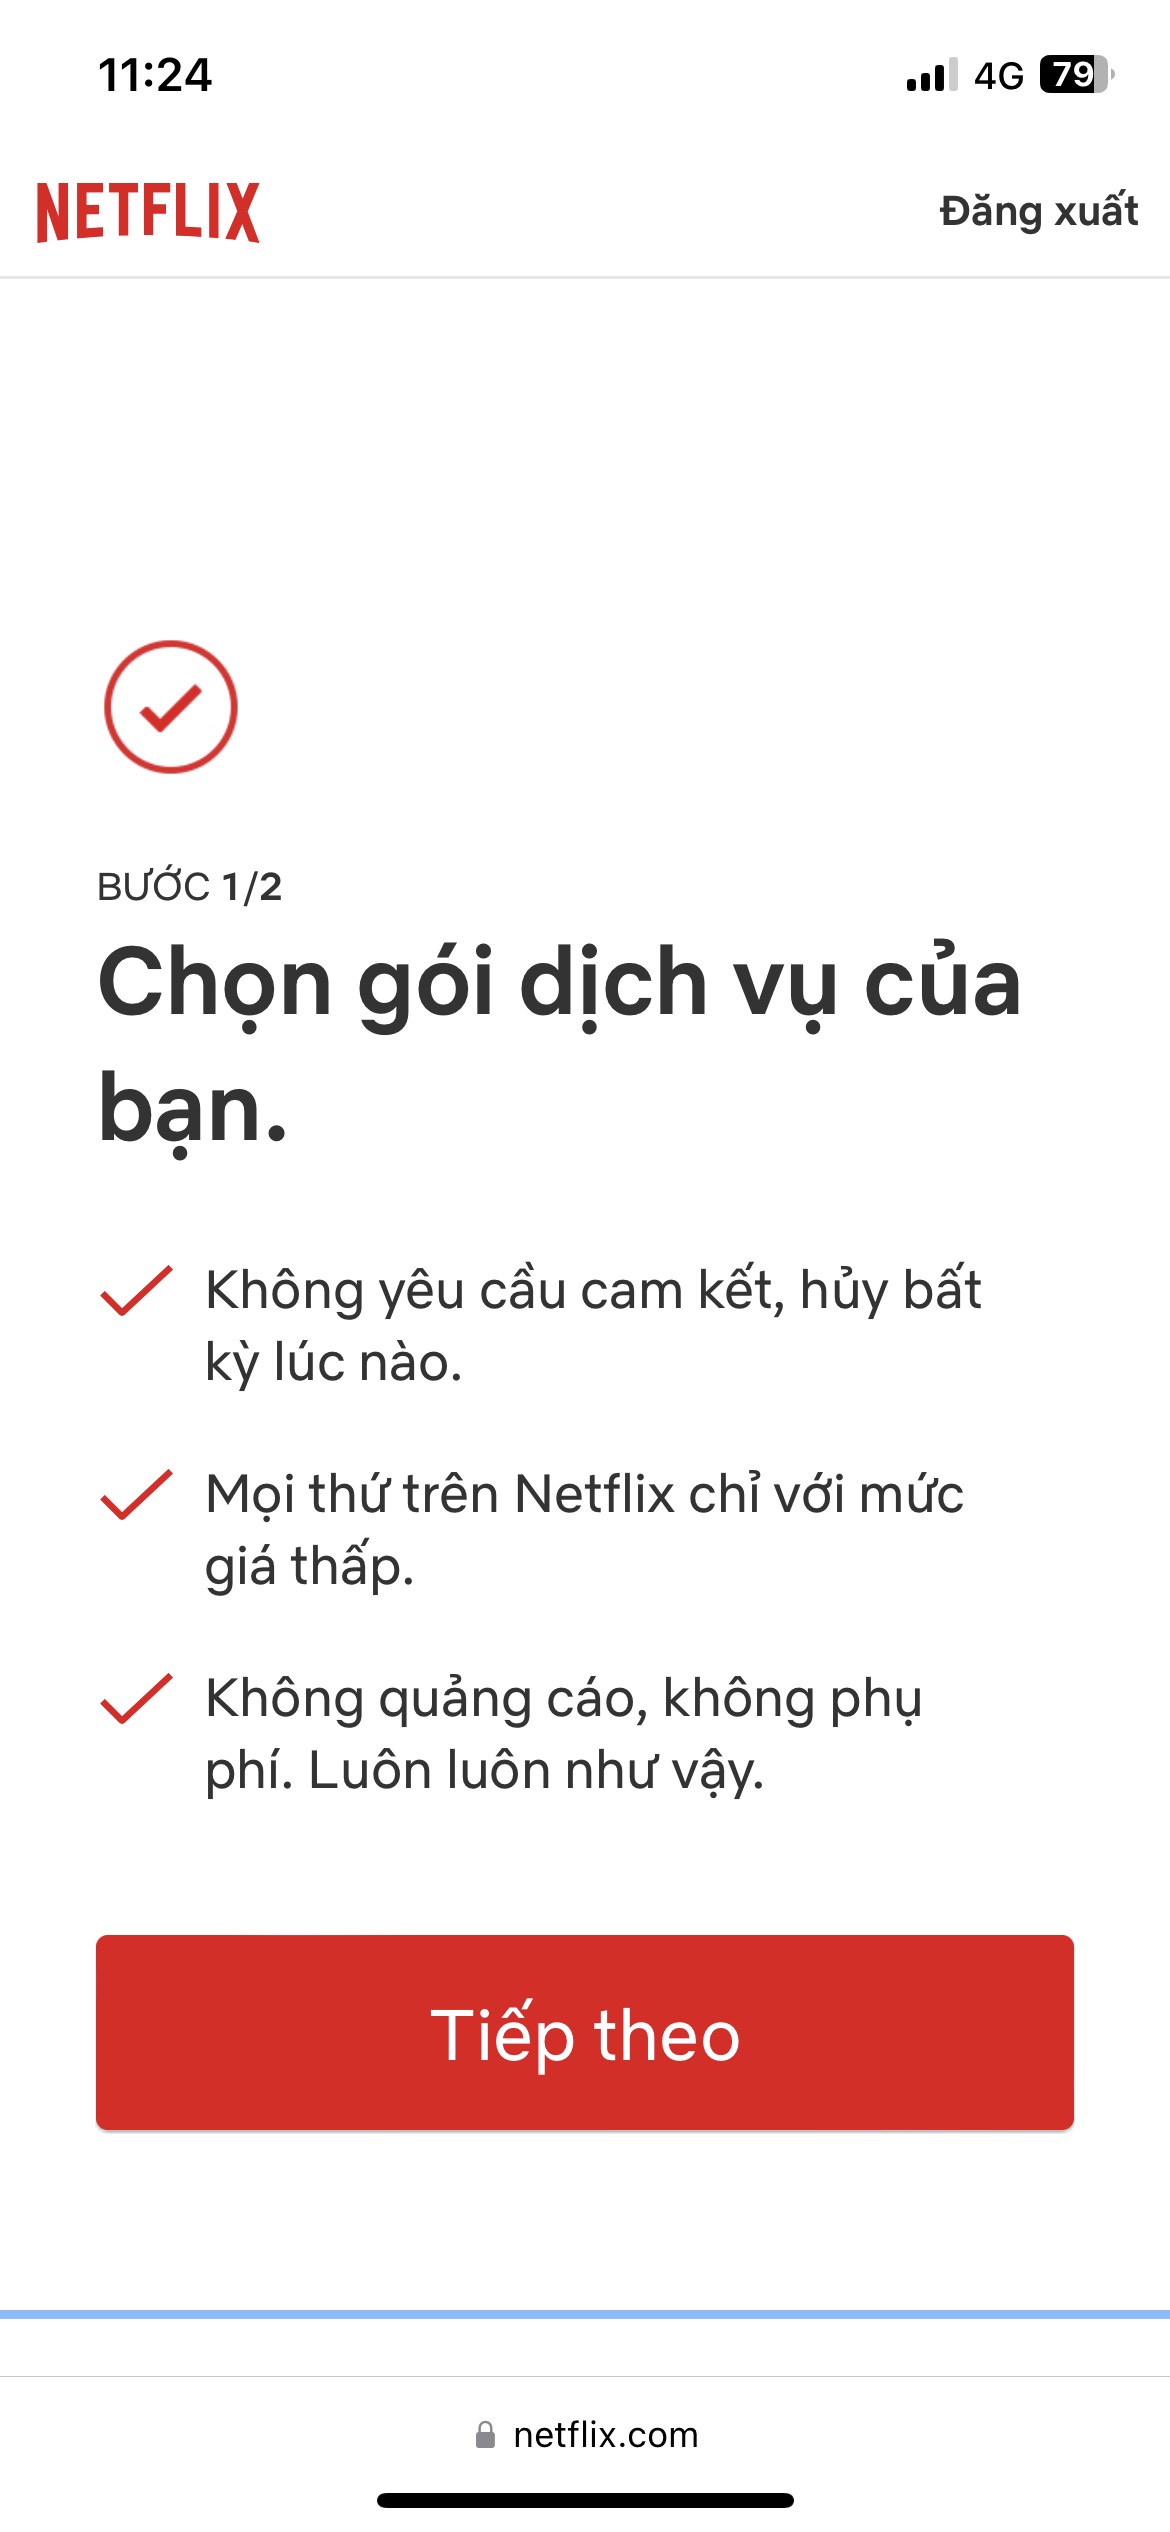 Bước 1: Vào Netflix.com > Chọn 1 trong các gói Netflix phù hợp;